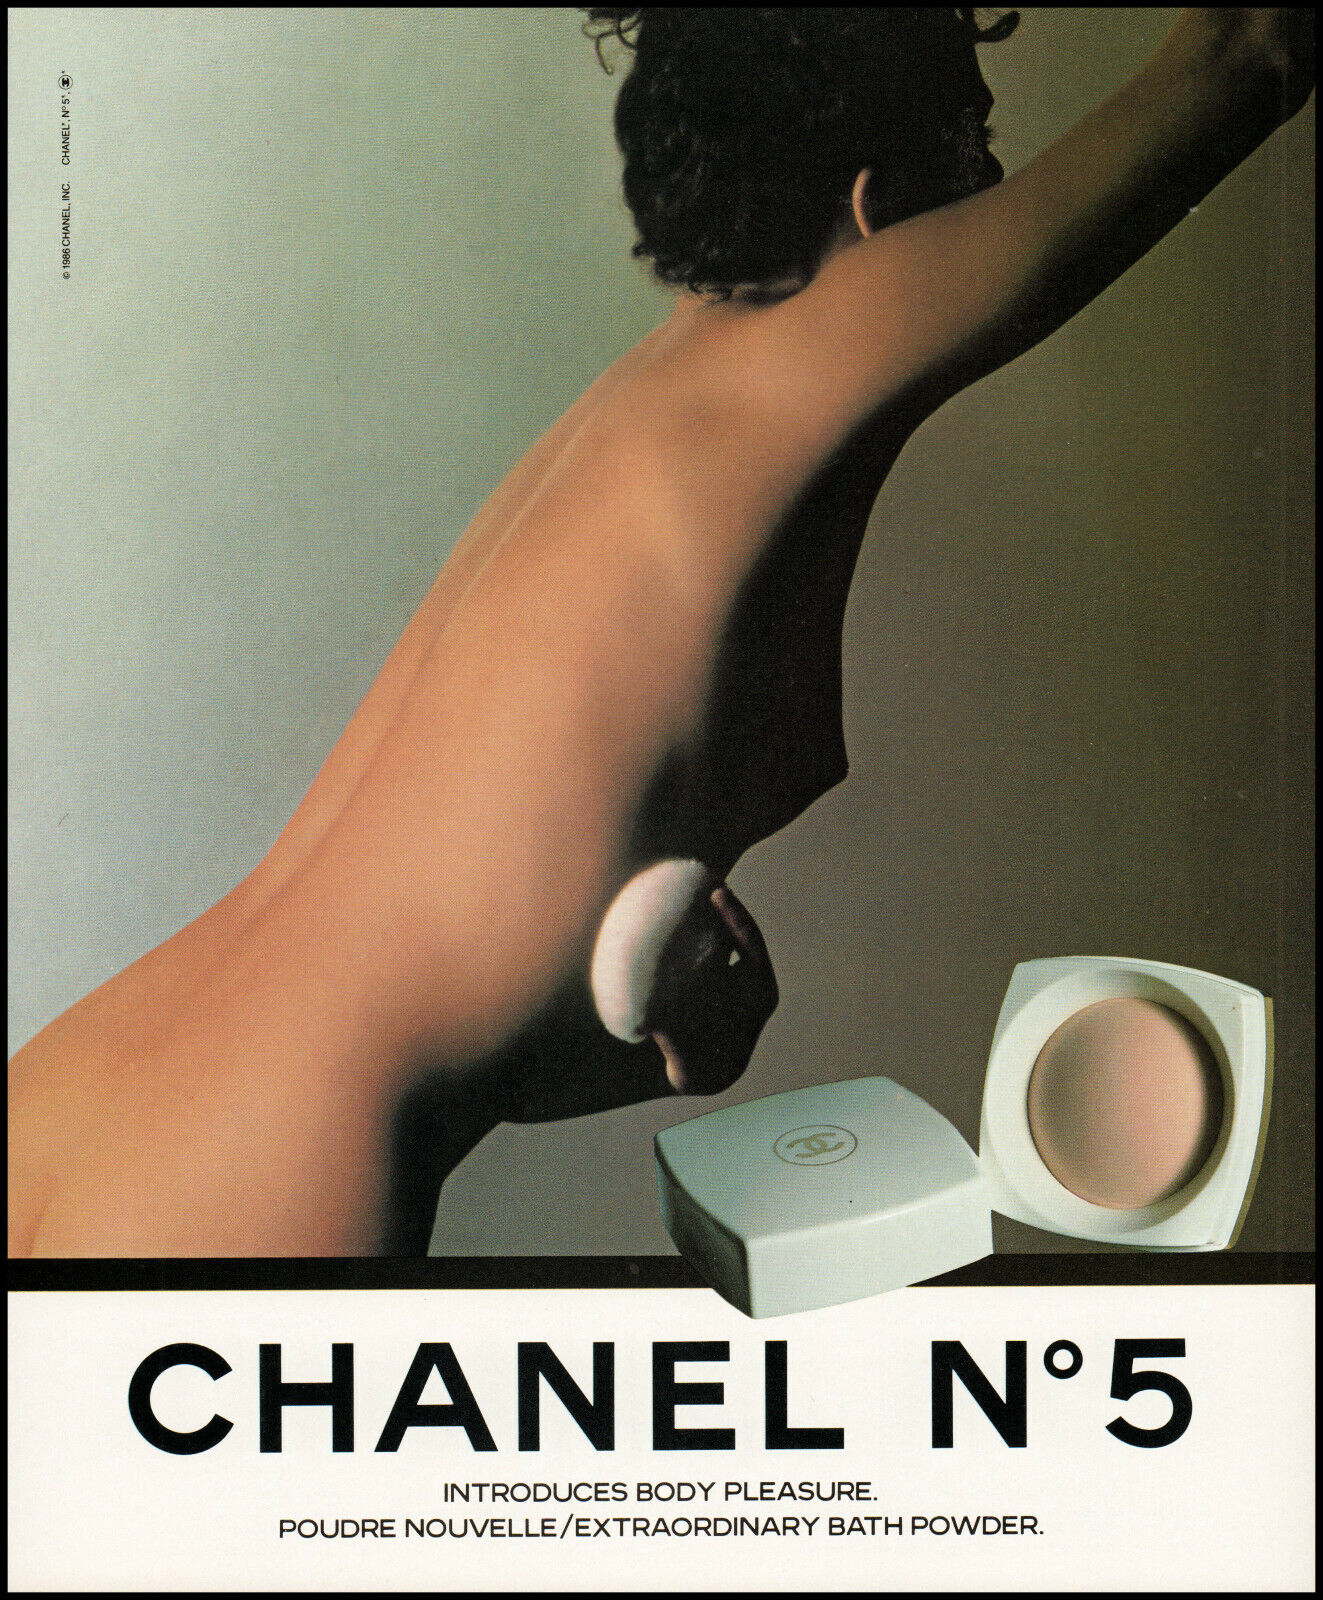 1986 Woman un-clothed applying Chanel N°5 Bath Powder retro photo print  ads30